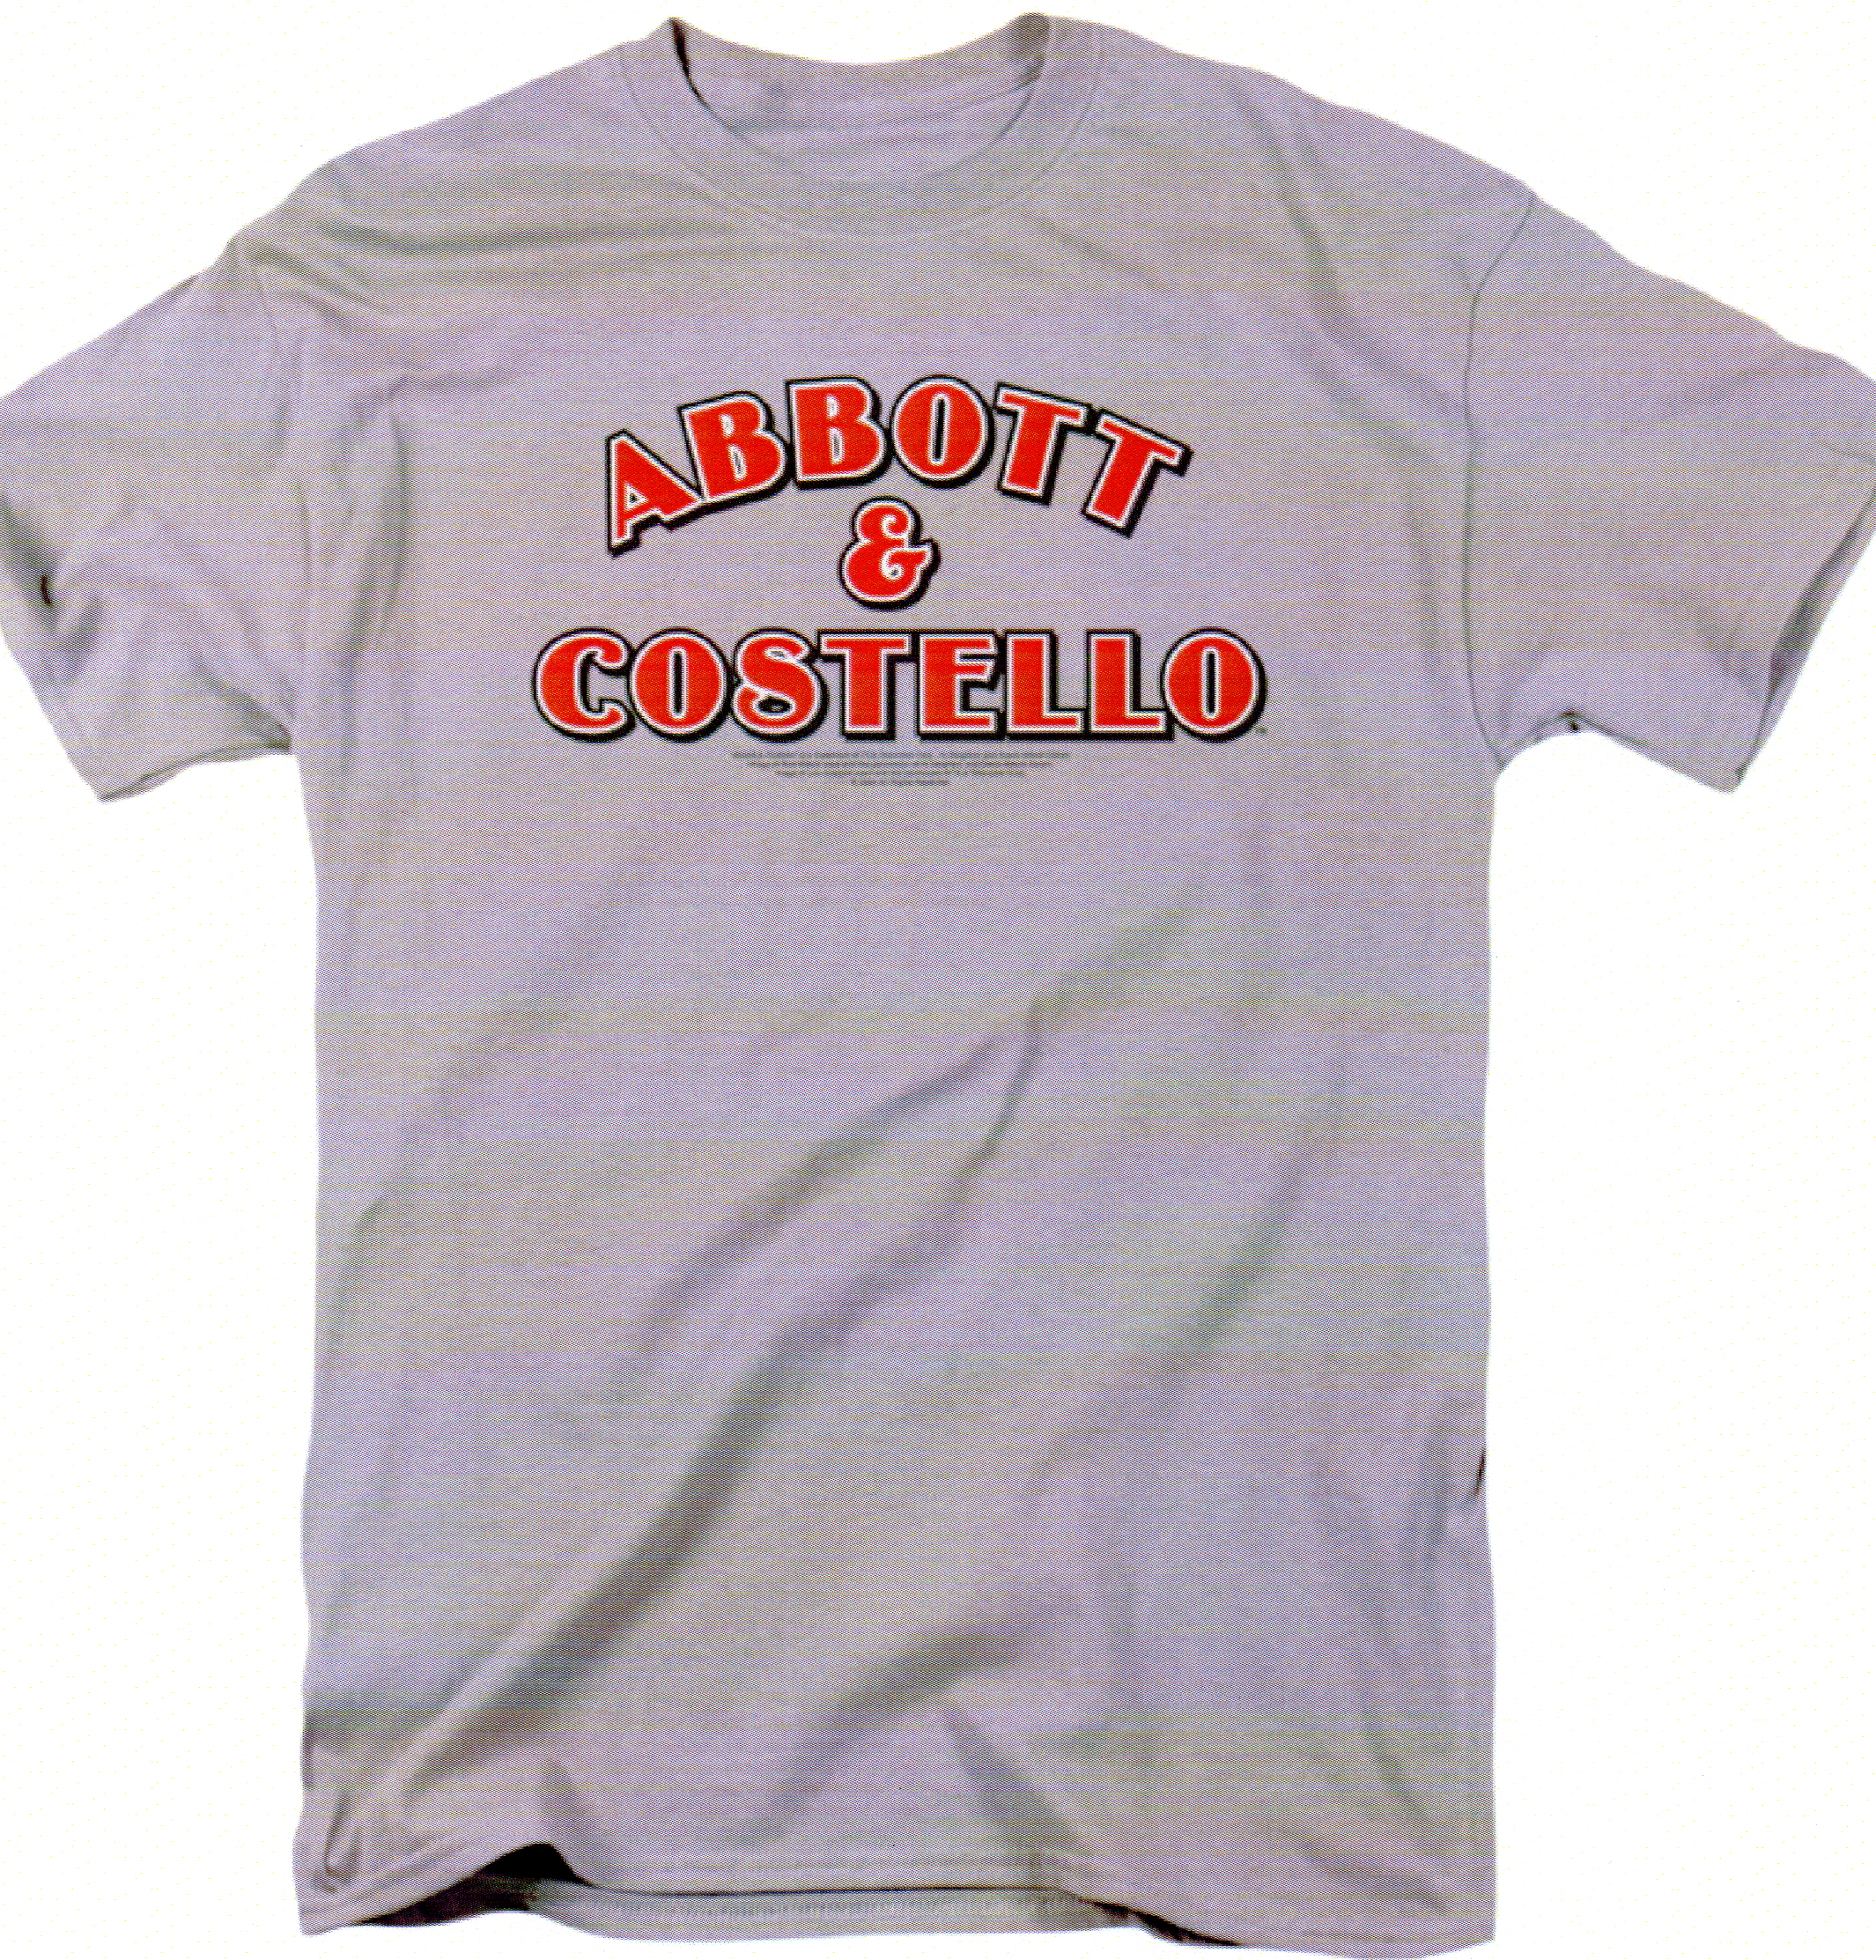 Abbott & Costello Short Sleeve Tee (grey)